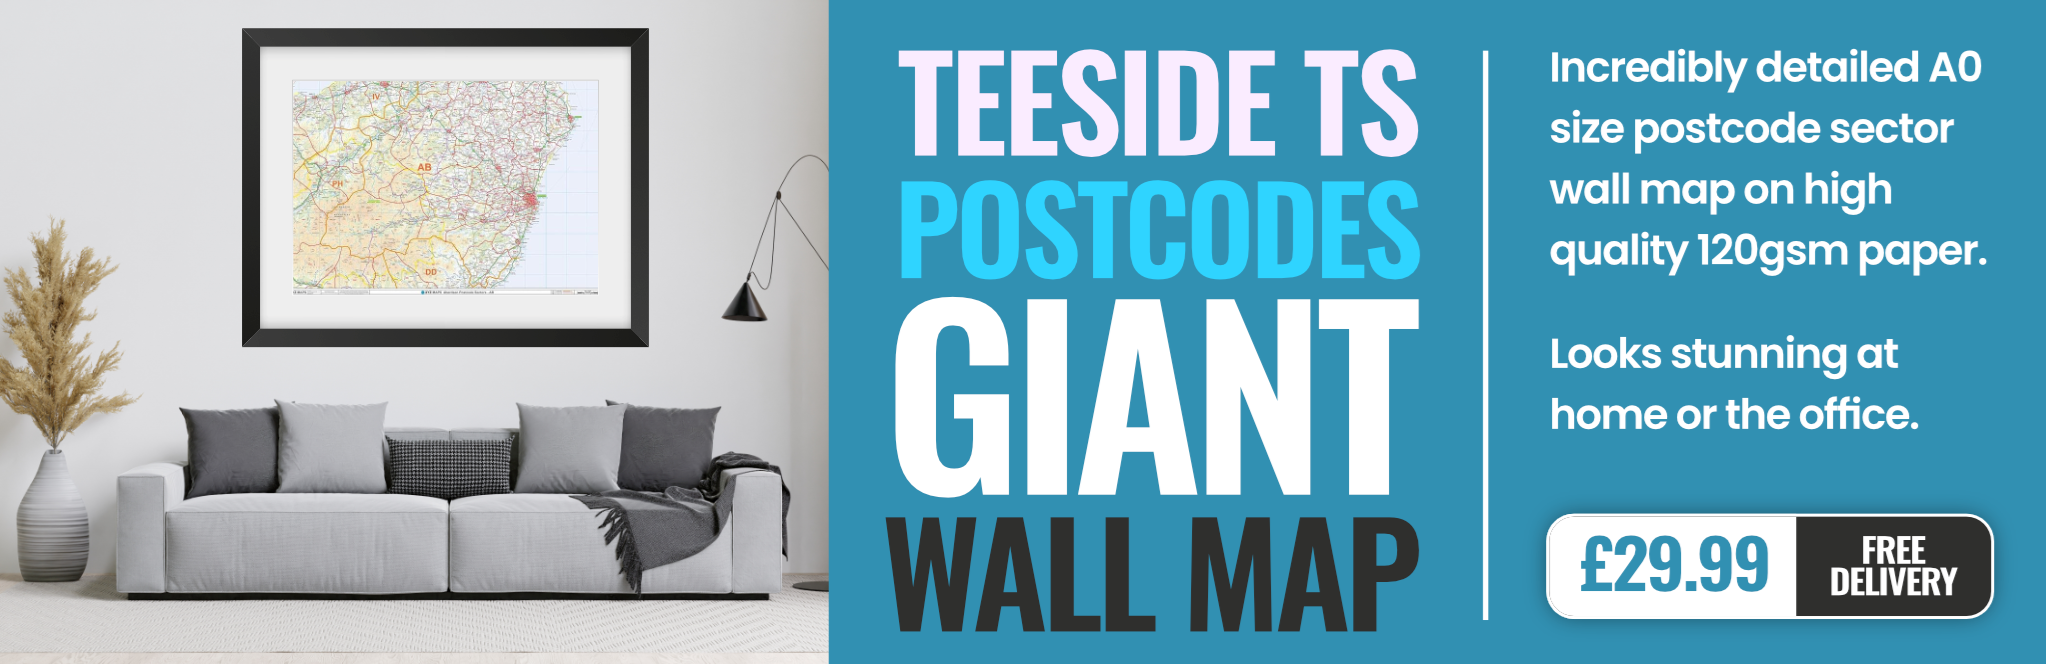 TS Postcode Wall Map